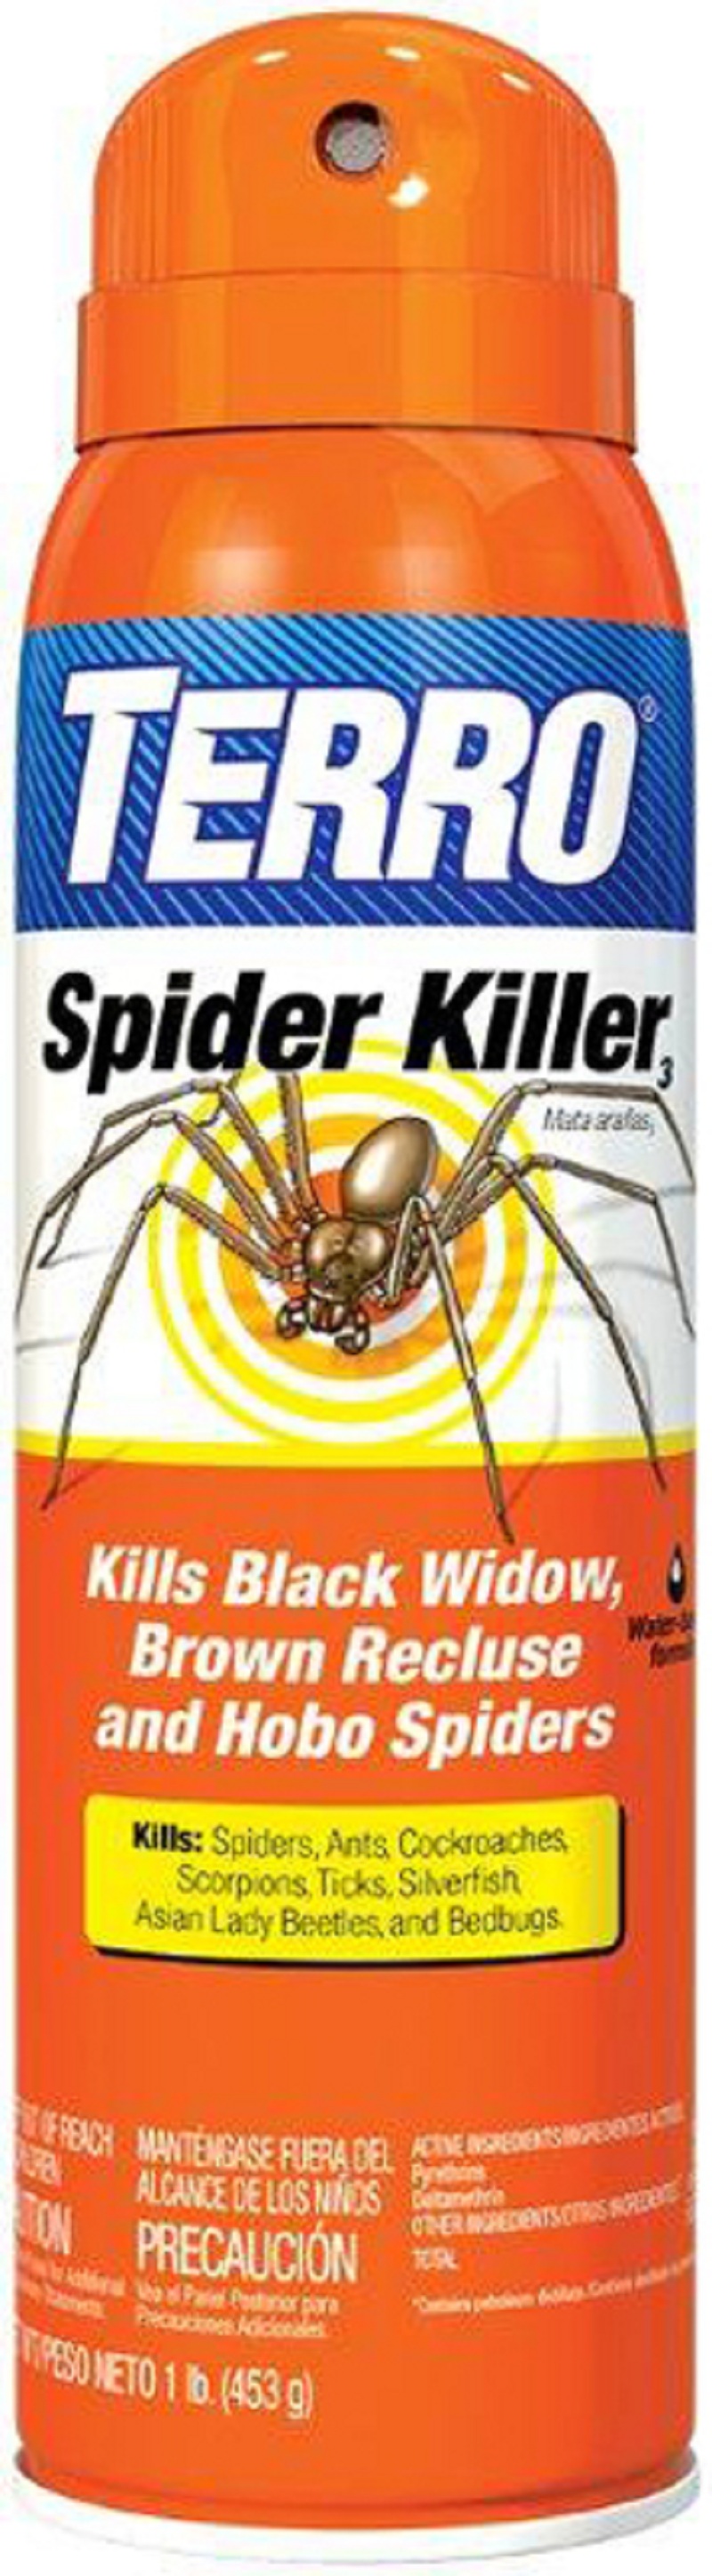 TERRO® Spider & Insect Trap